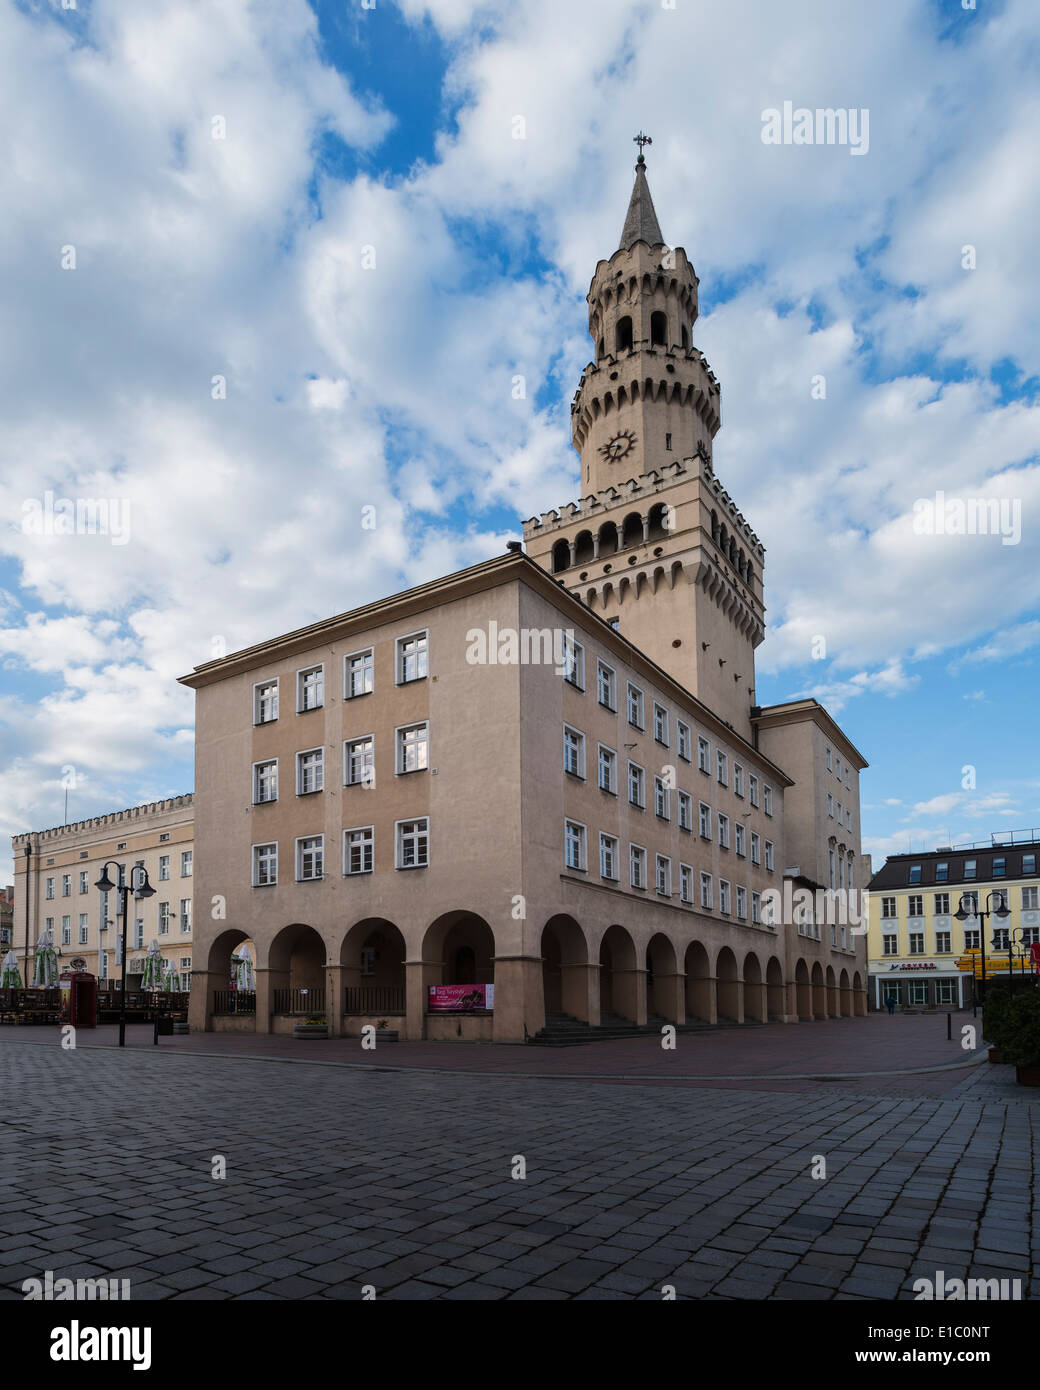 Town hall and Rynek market square, Opole, Silesia, Poland Stock Photo